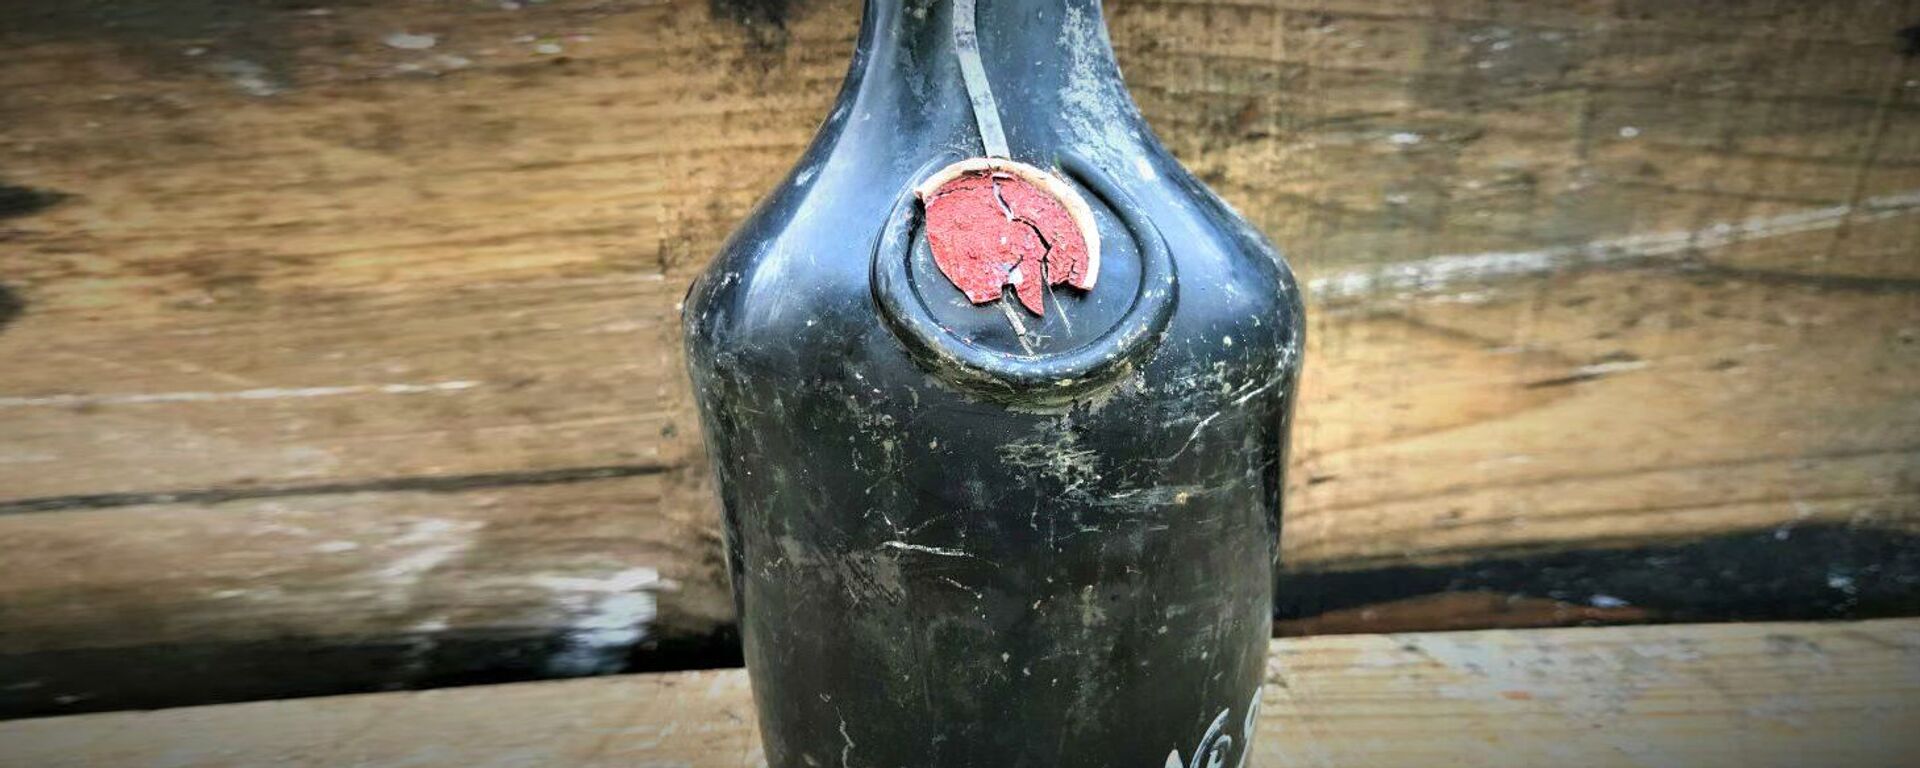 Одна из бутылок найденная на затонувшем судне - Sputnik Latvija, 1920, 09.11.2019